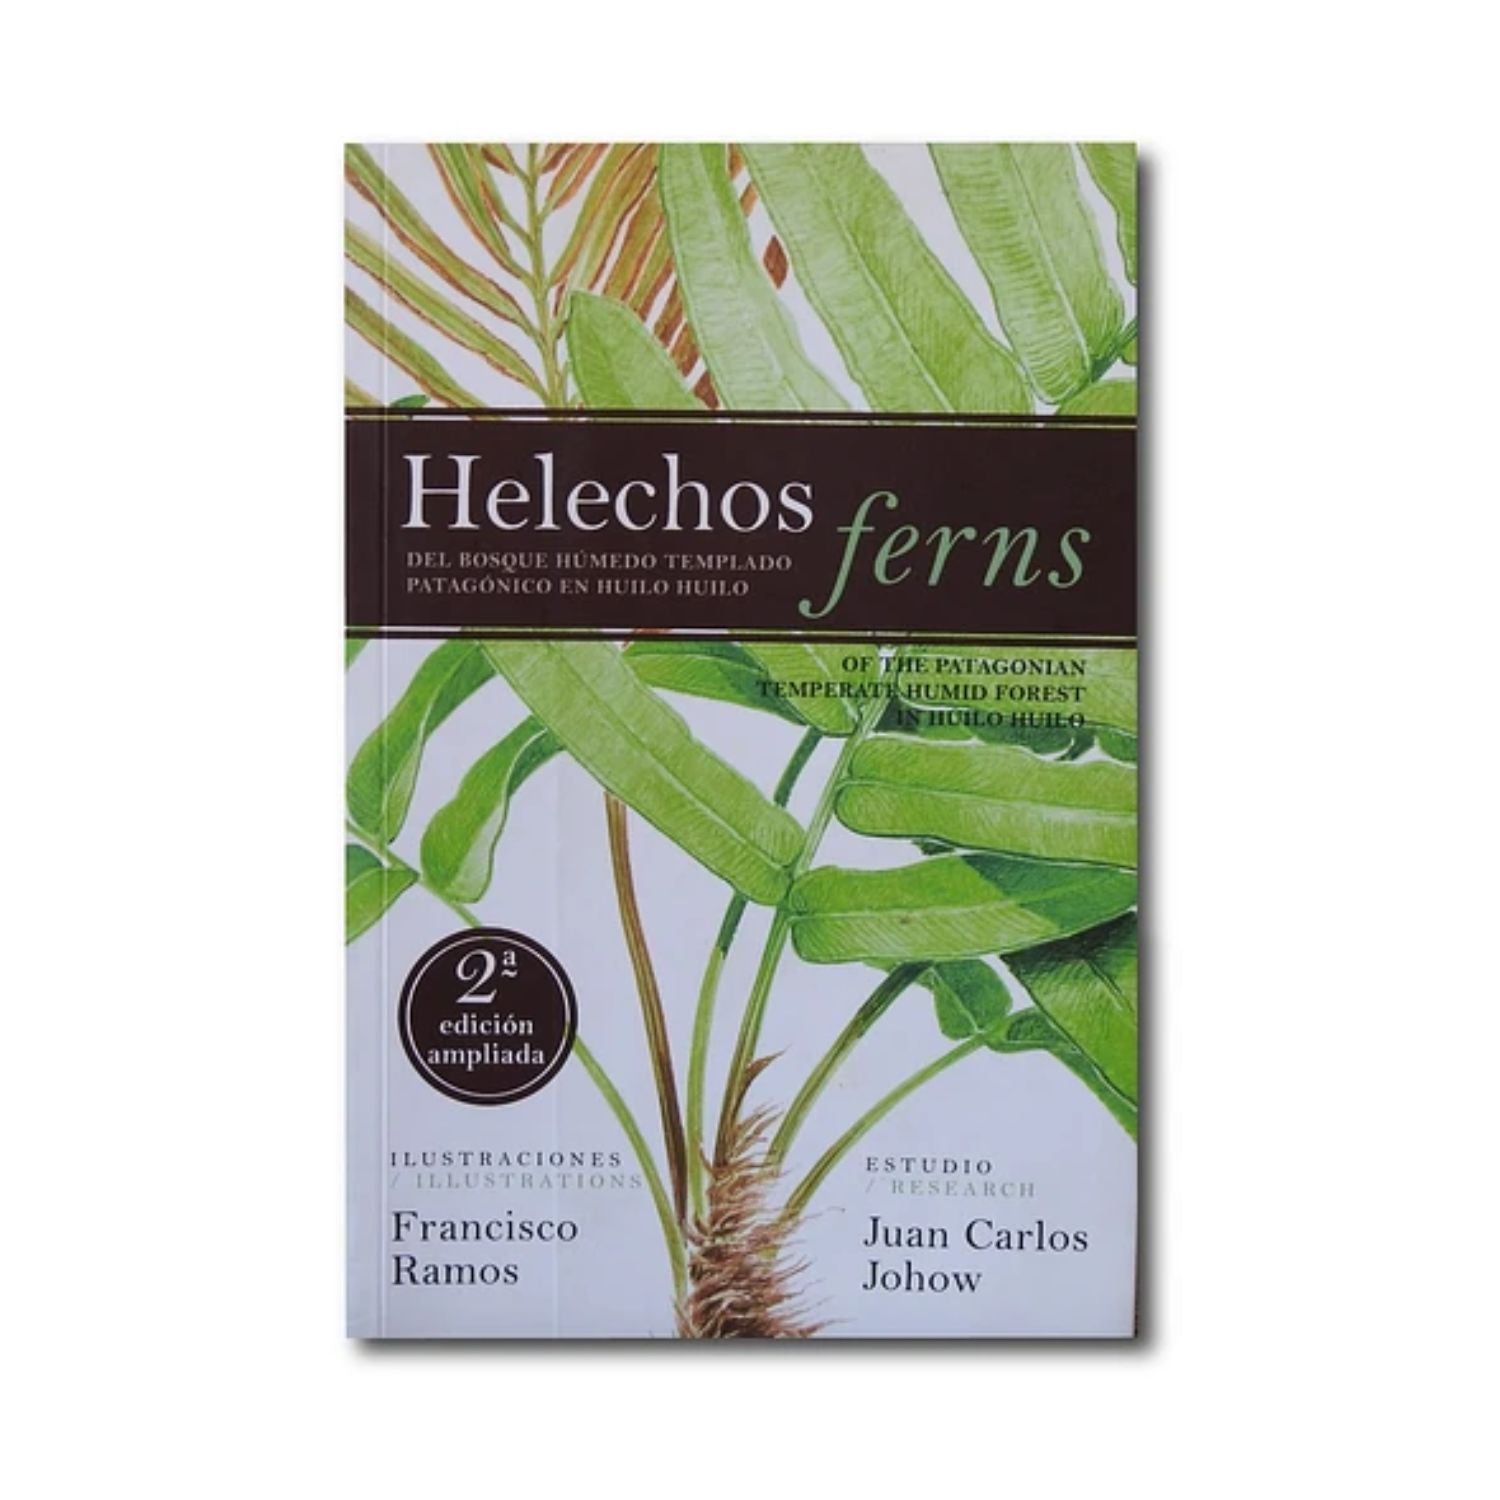 Helechos - Ferns - Del Bosque Húmedo Templado Patagónico en Huilo Huilo Segunda Edición